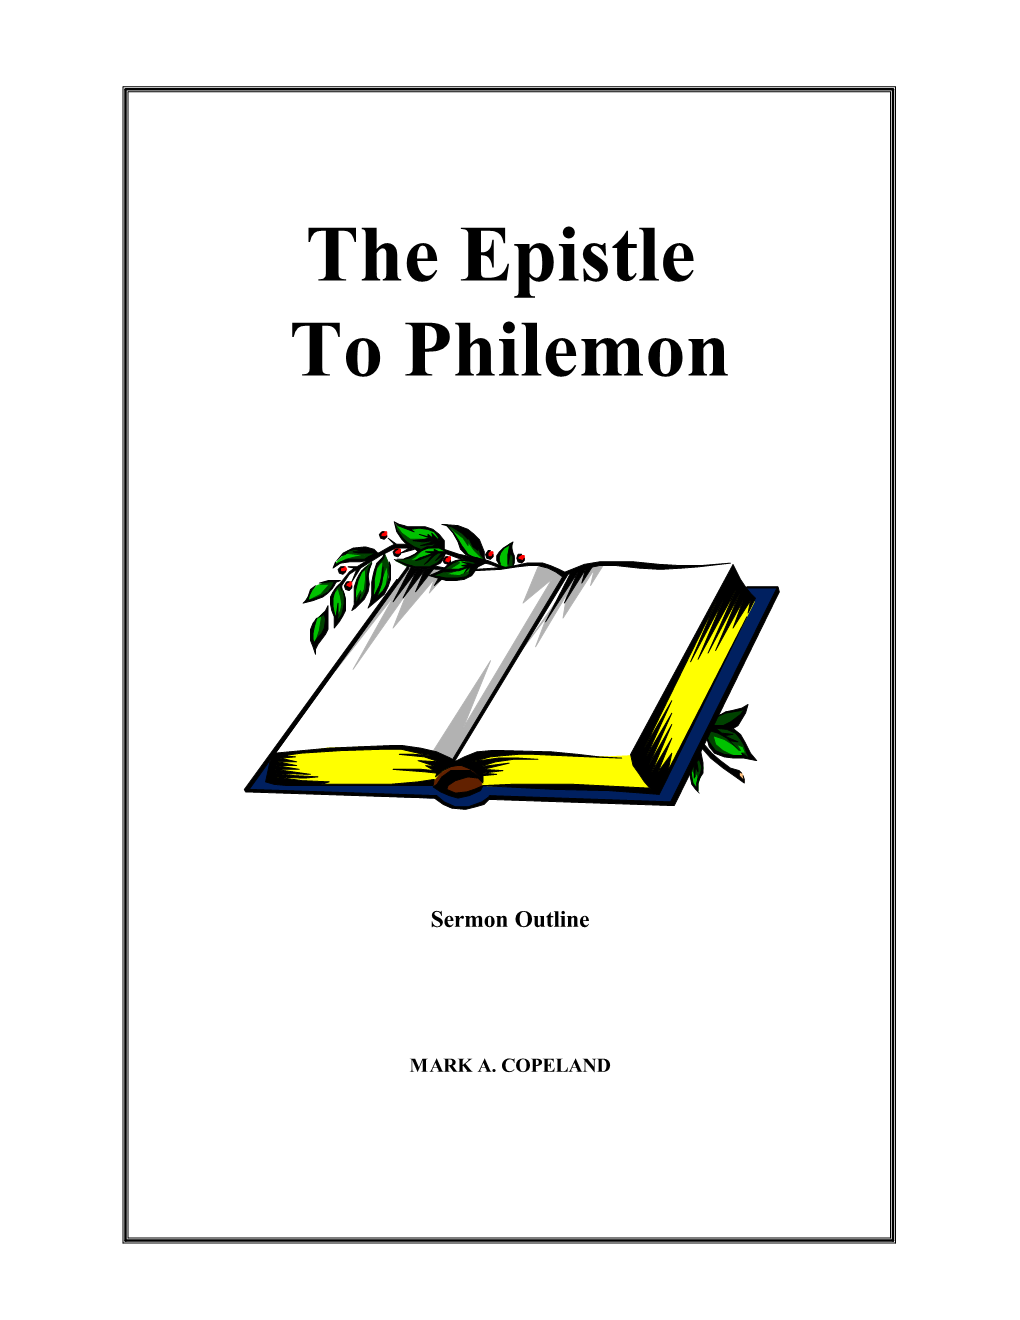 The Epistle to Philemon